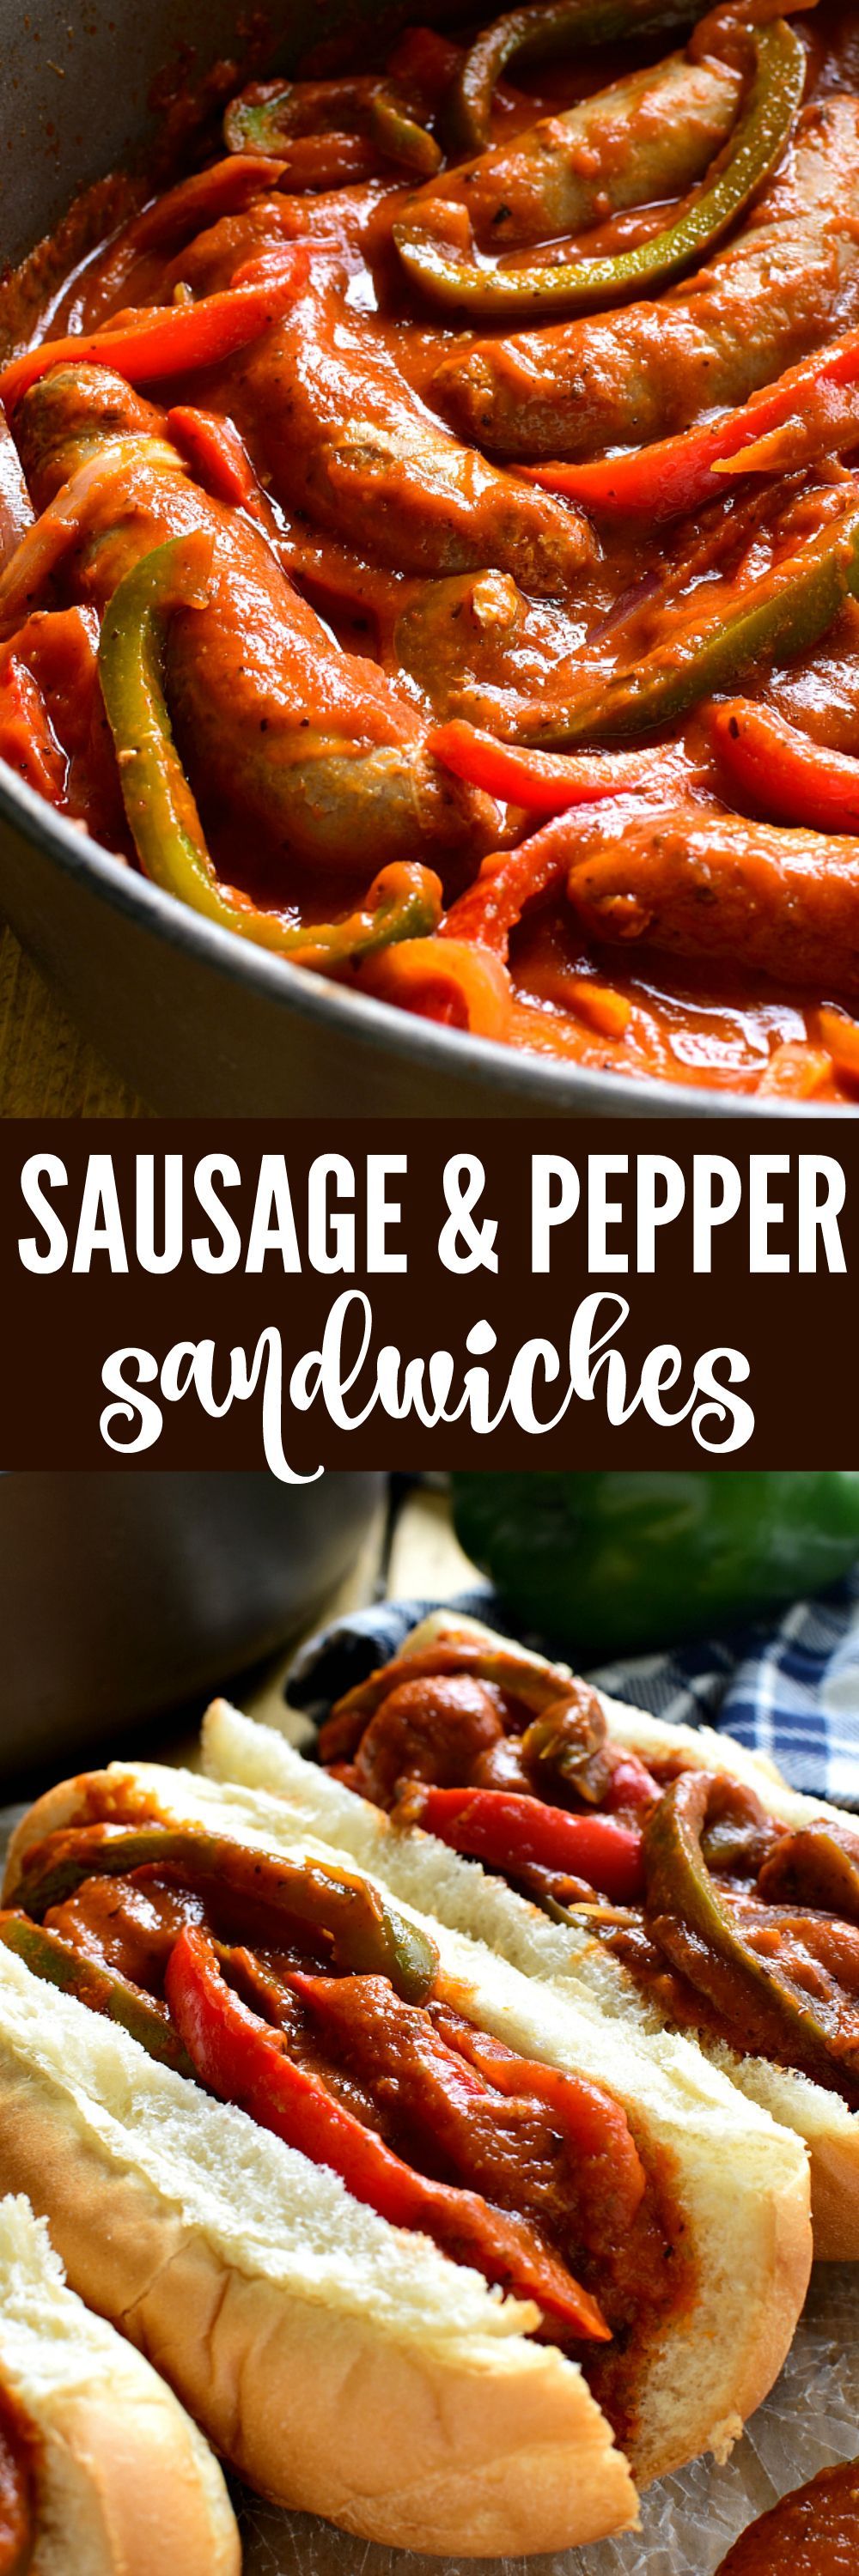 25 hot sausage recipes
 ideas